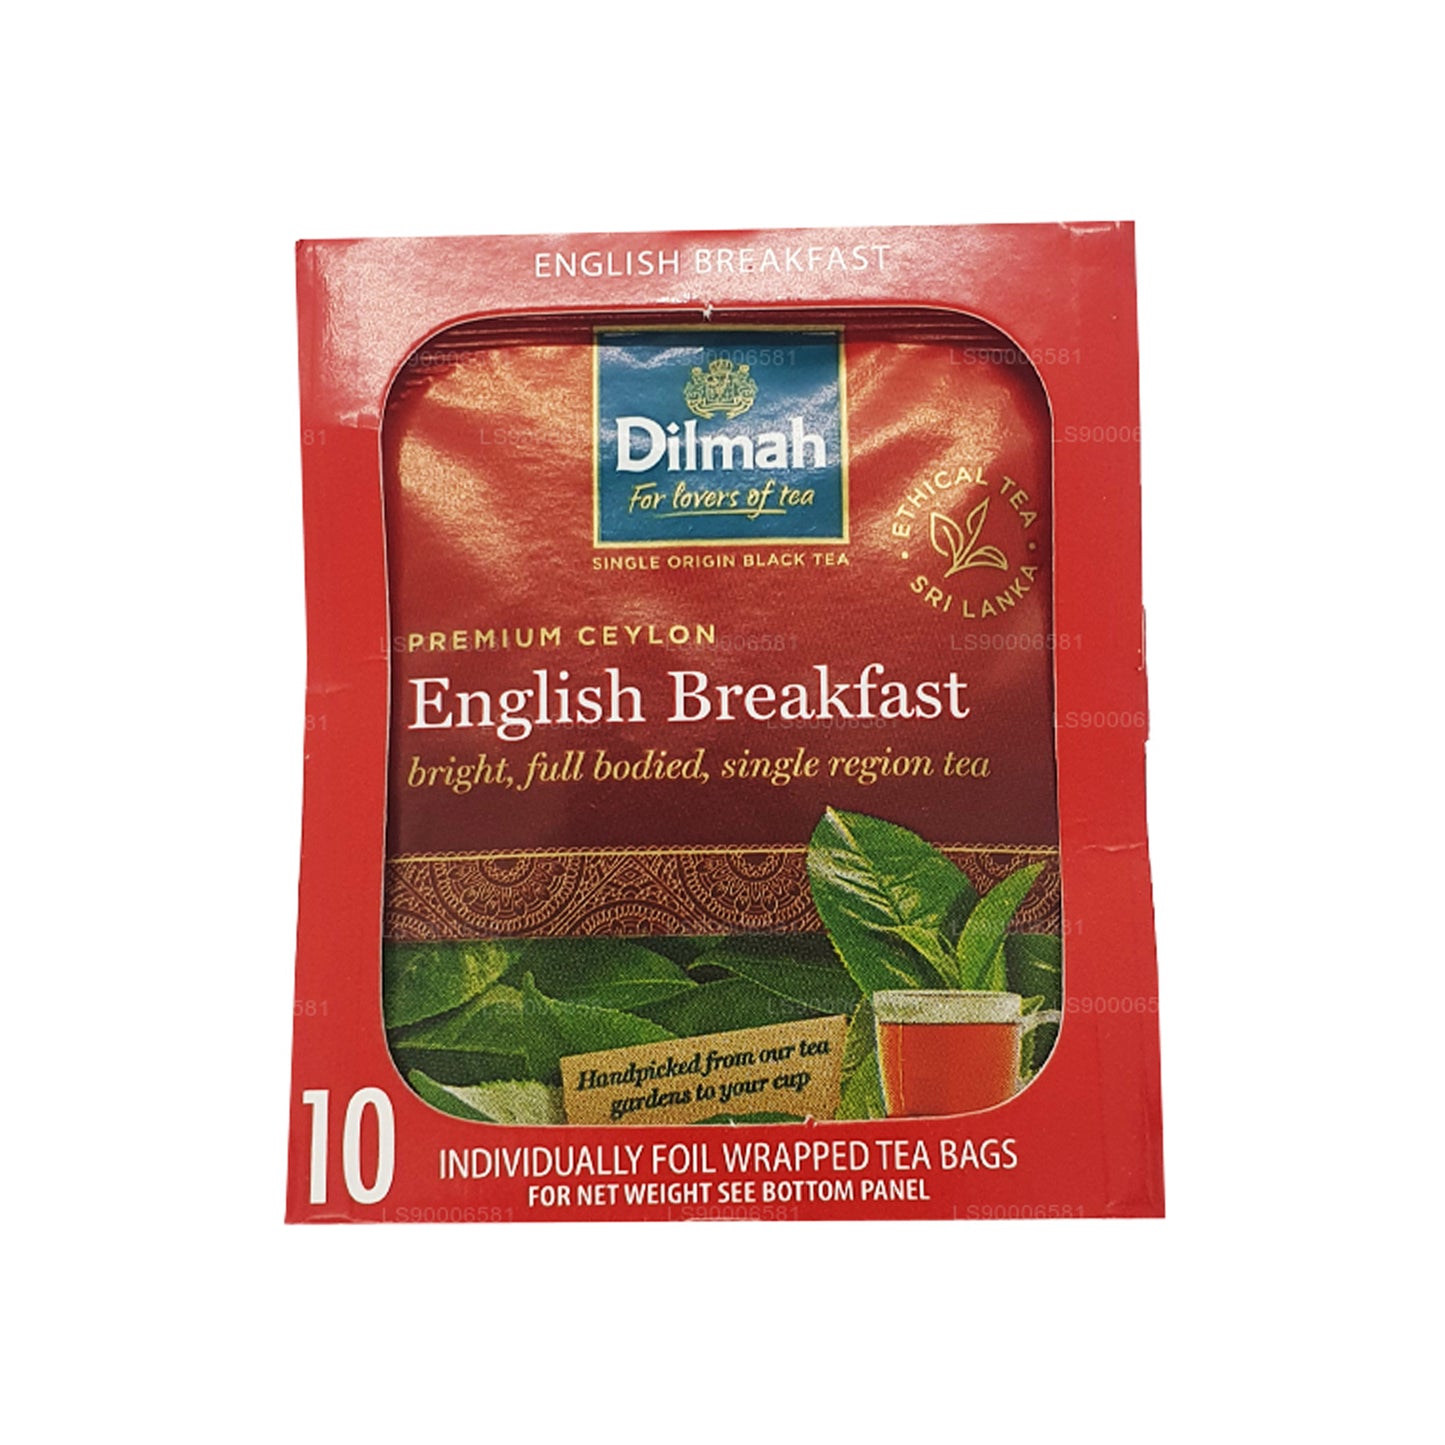 Dilmah İngiliz Kahvaltı Çayı (20g) 10 Bireysel Folyo Sarılı Çay Poşeti